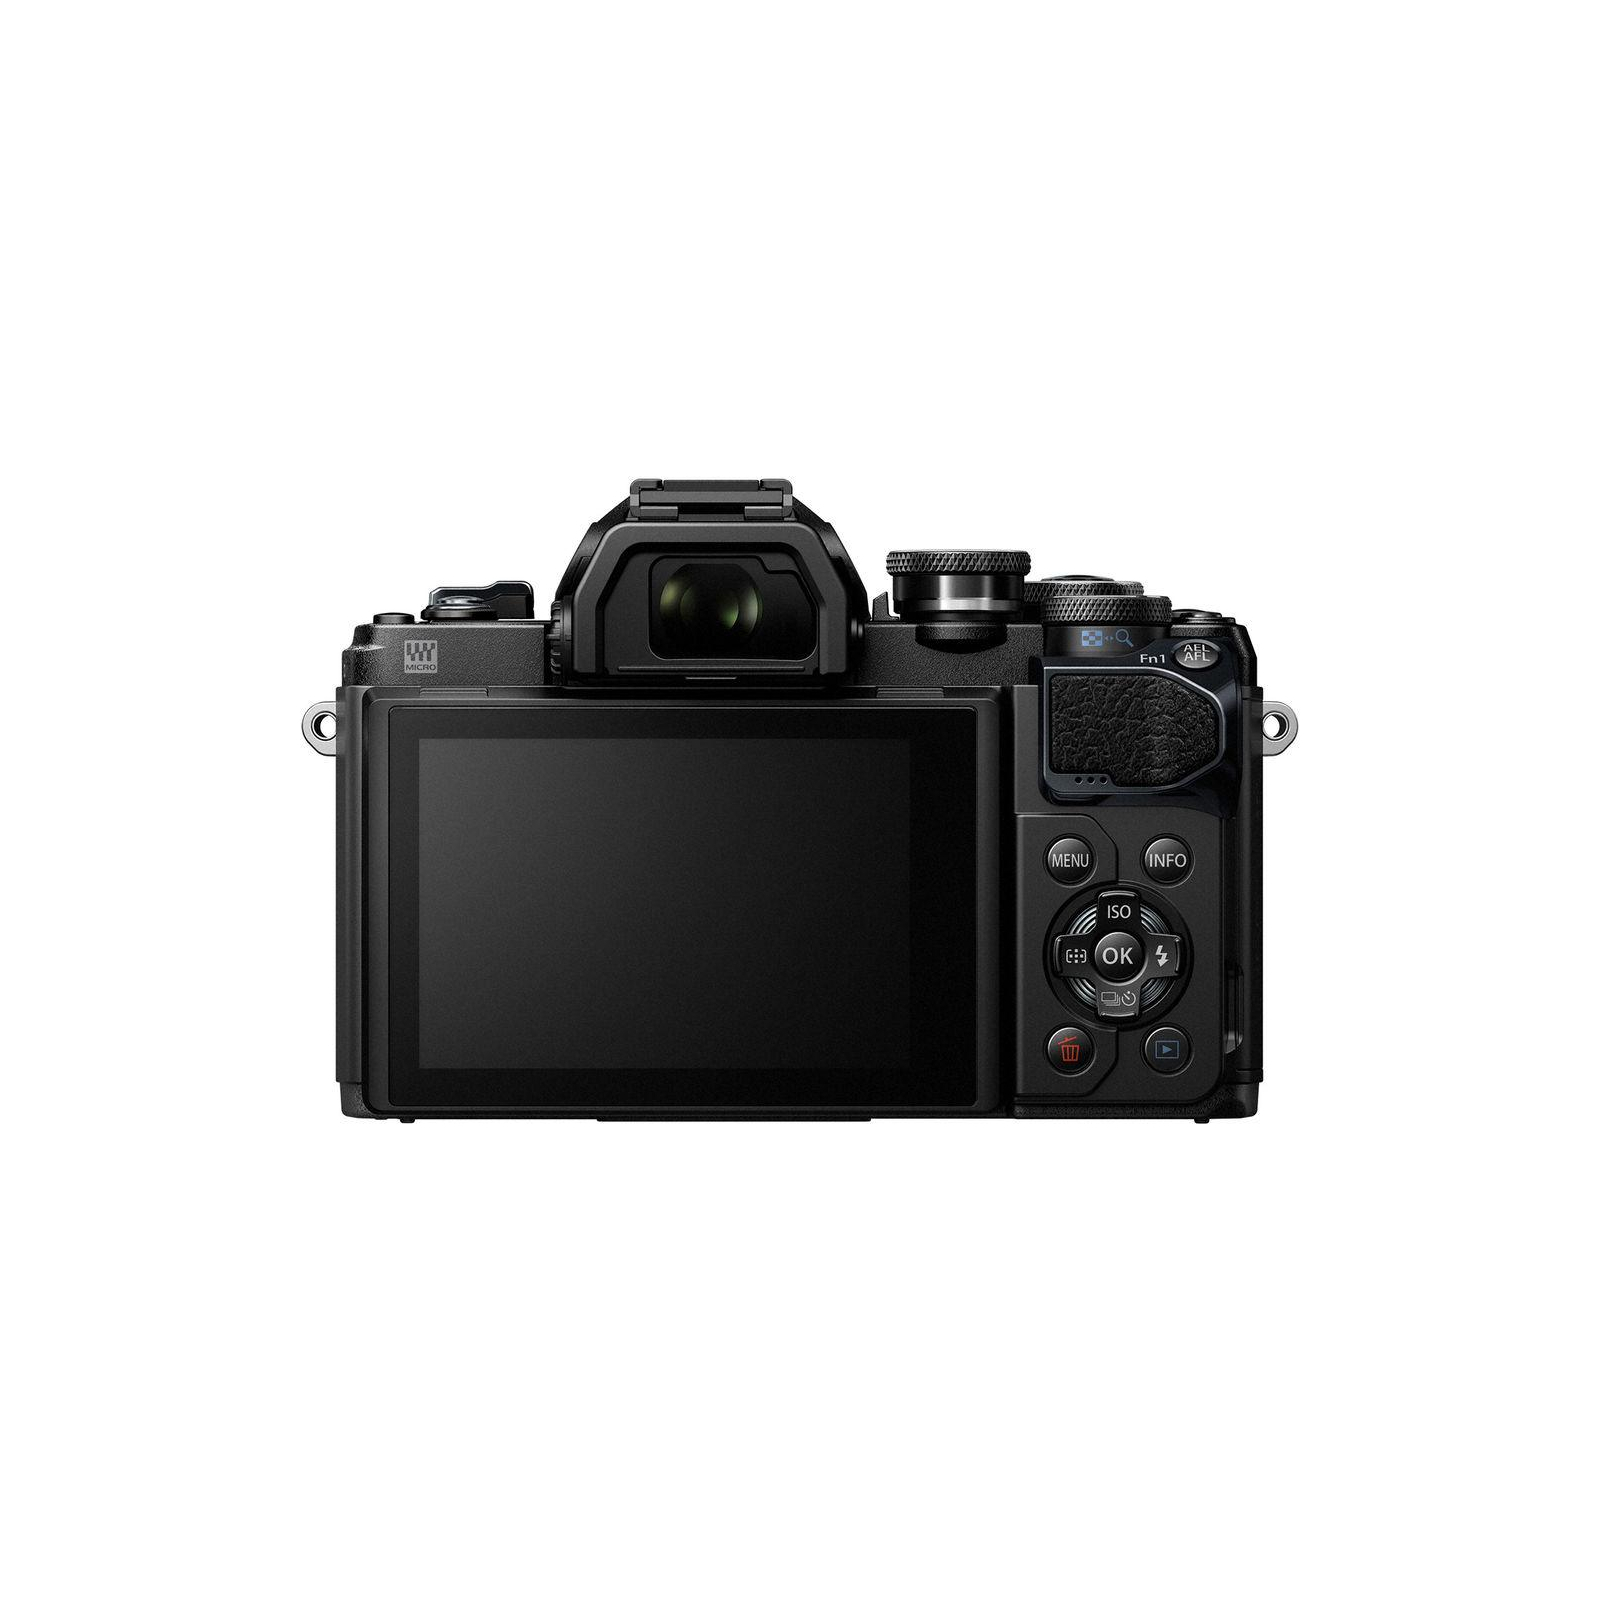 Цифровой фотоаппарат Olympus E-M10 mark III 14-150 II Kit black/black (V207070BE010) изображение 3